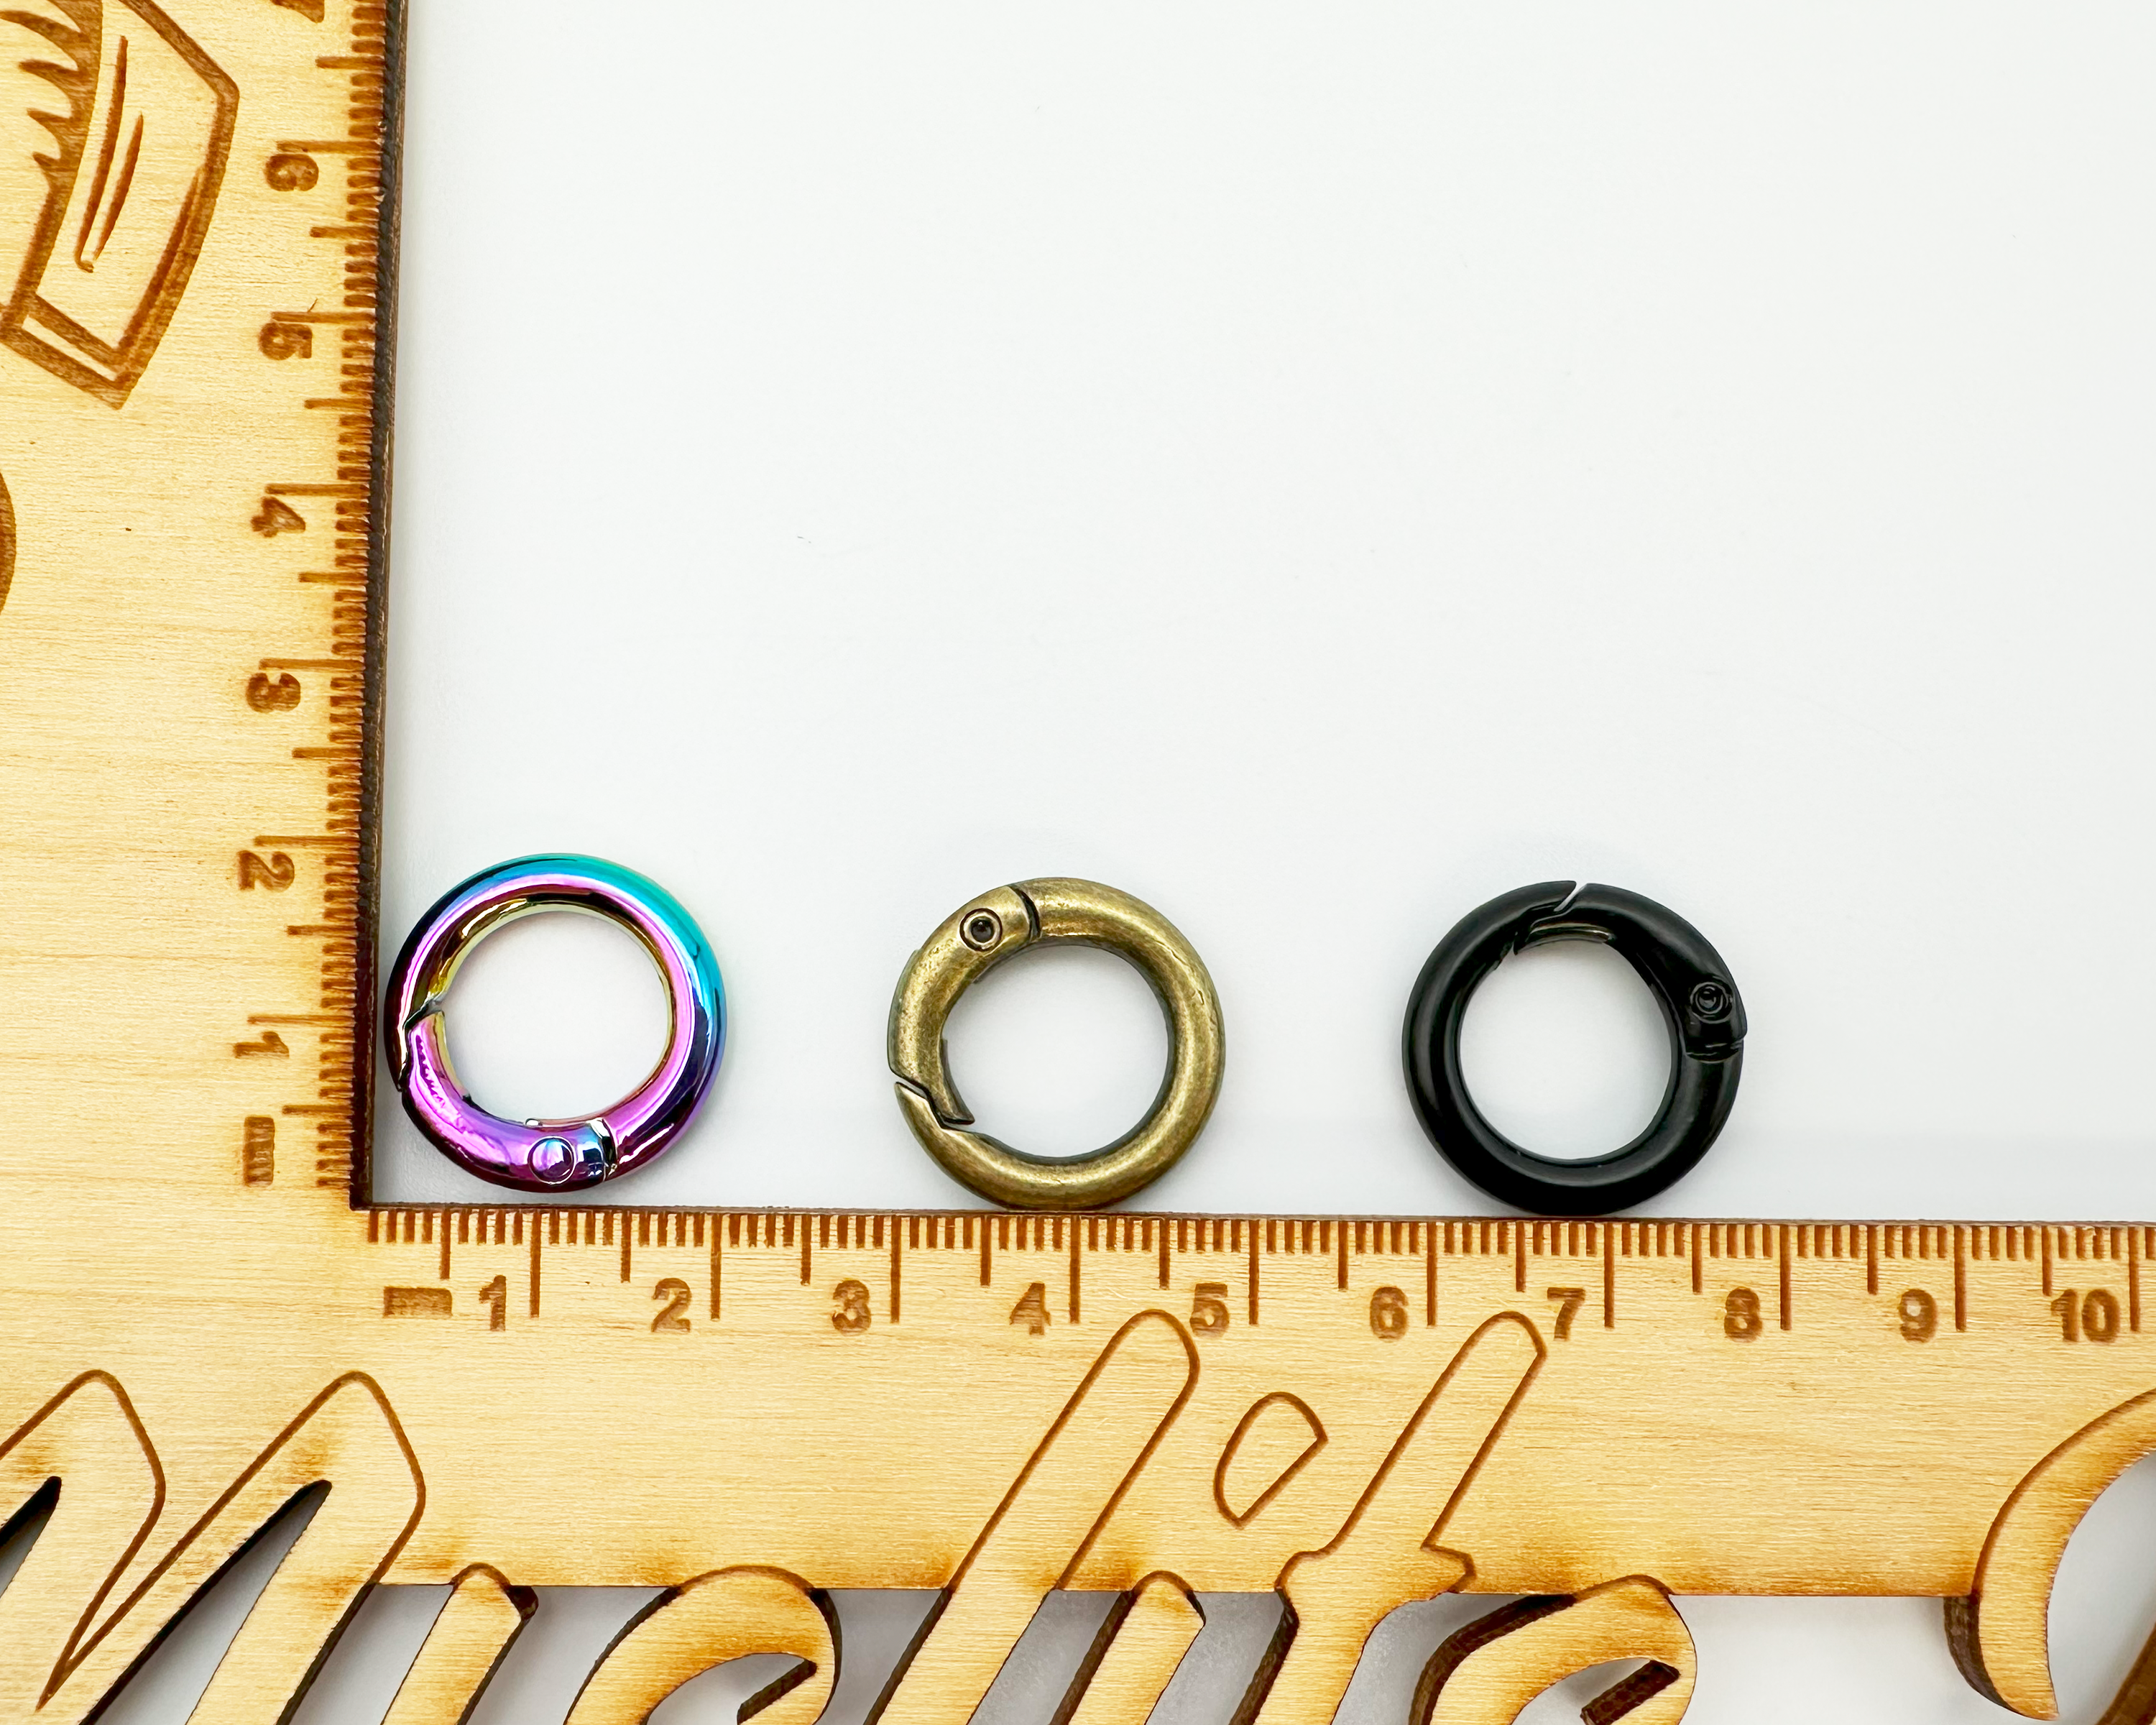 Gate Rings, 21mm Diameter, Spring O Keyring, 2 pack, Metal Bag Making Hardware Supplies